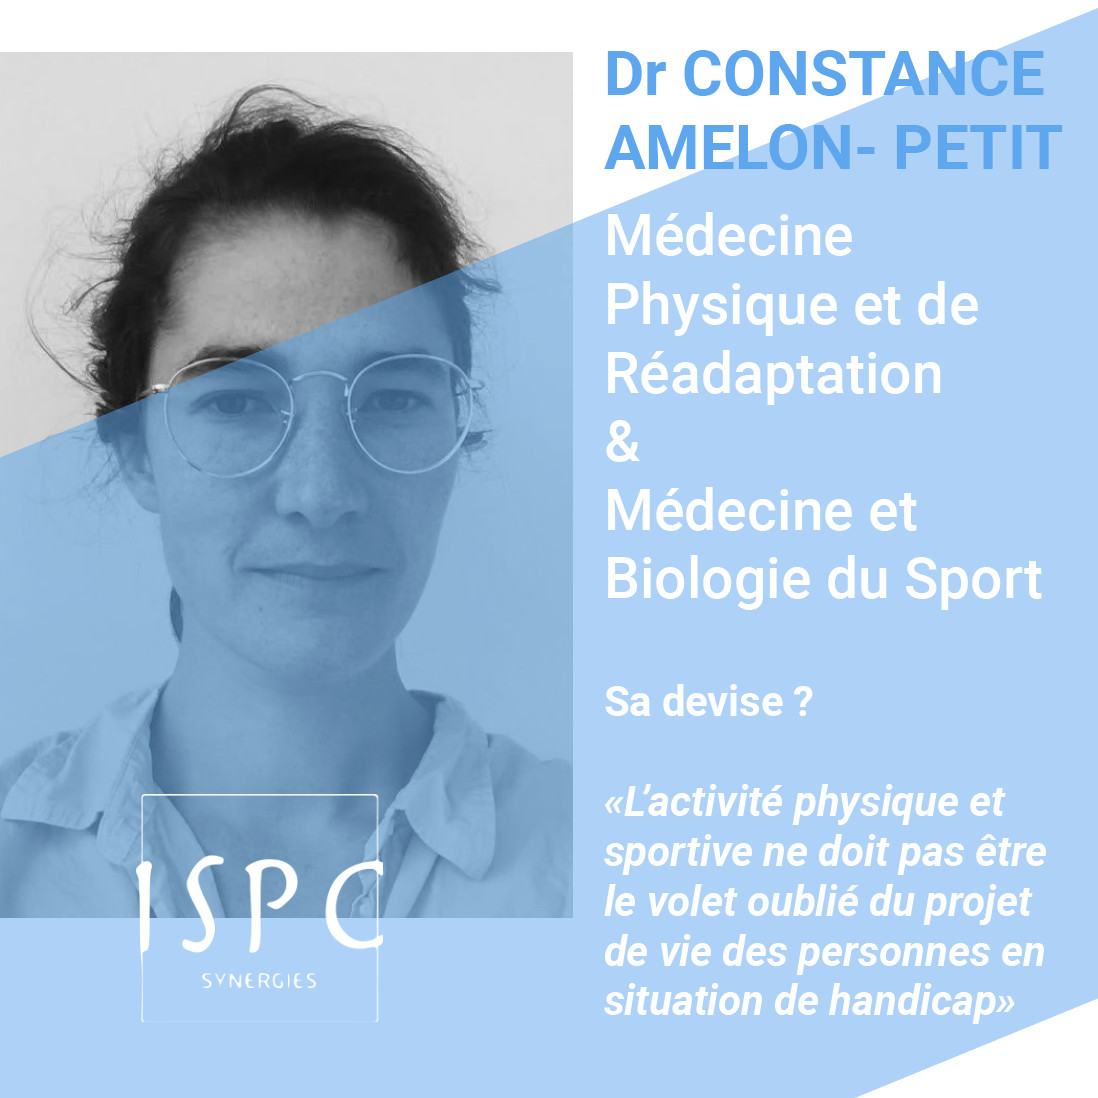 Constance AMELON-PETIT, médecin de Médecine Physique et de Réadaptation et de Médecine et Biologie du sport ISPC